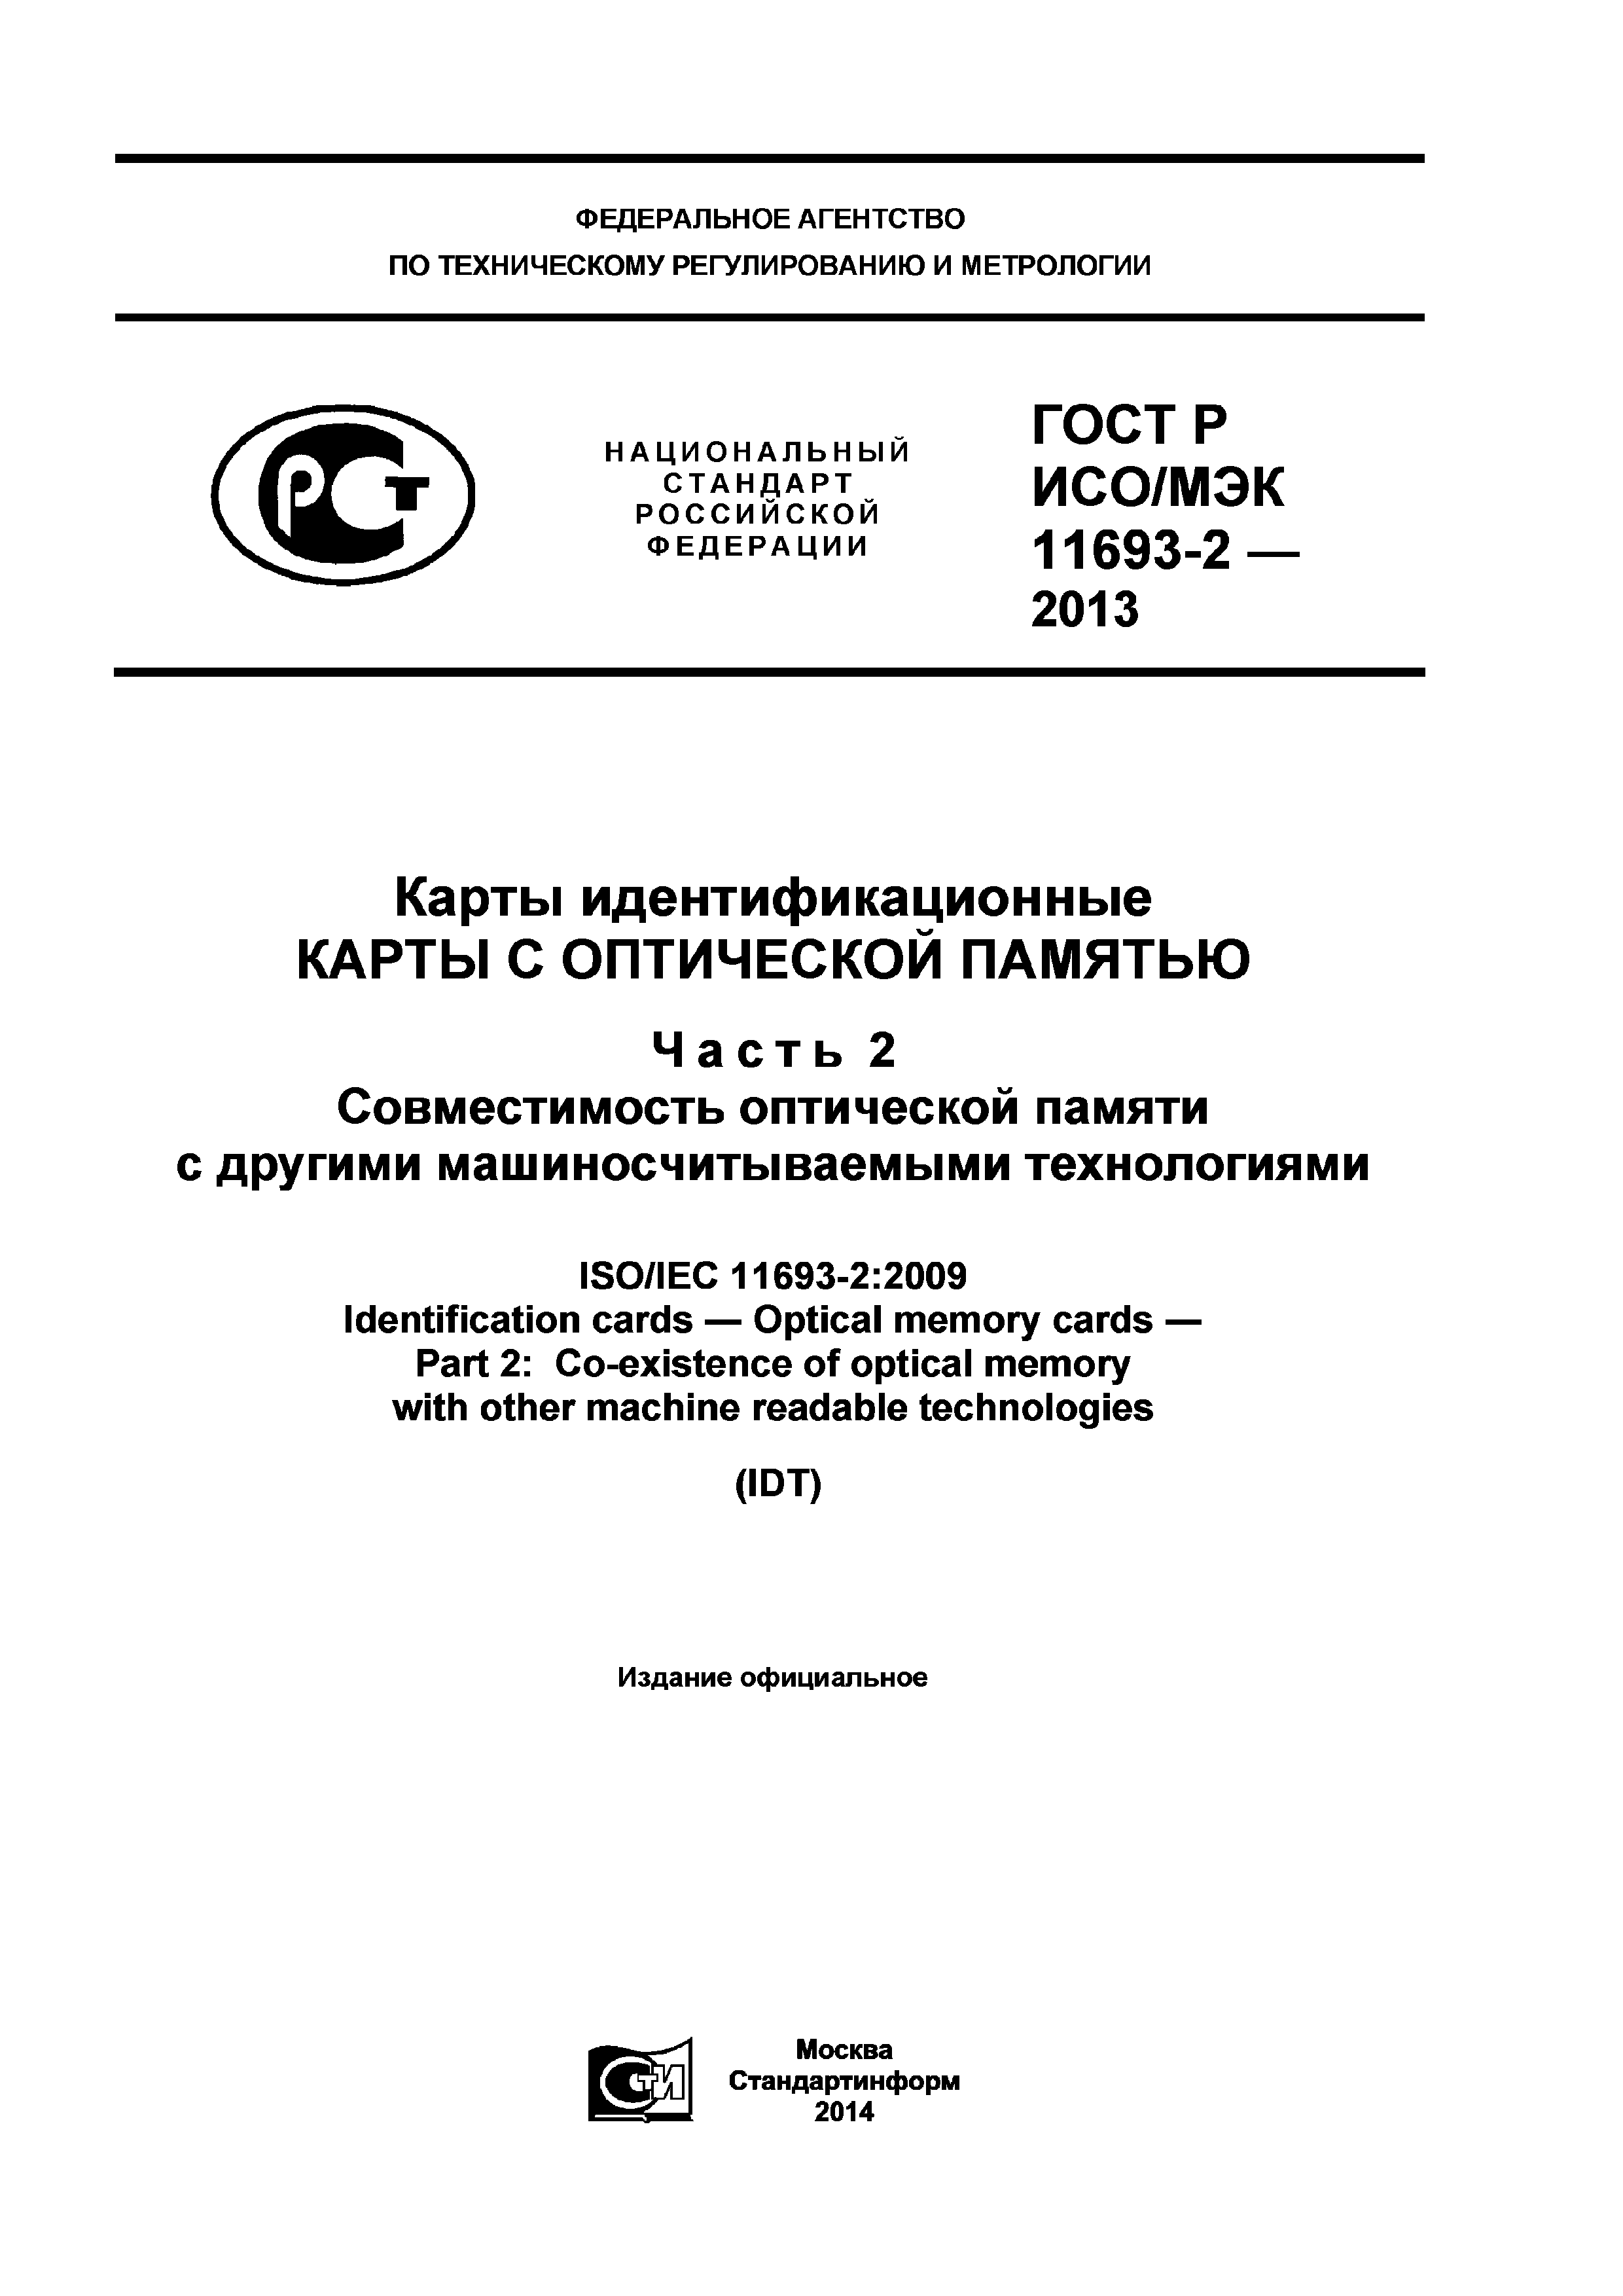 ГОСТ Р ИСО/МЭК 11693-2-2013